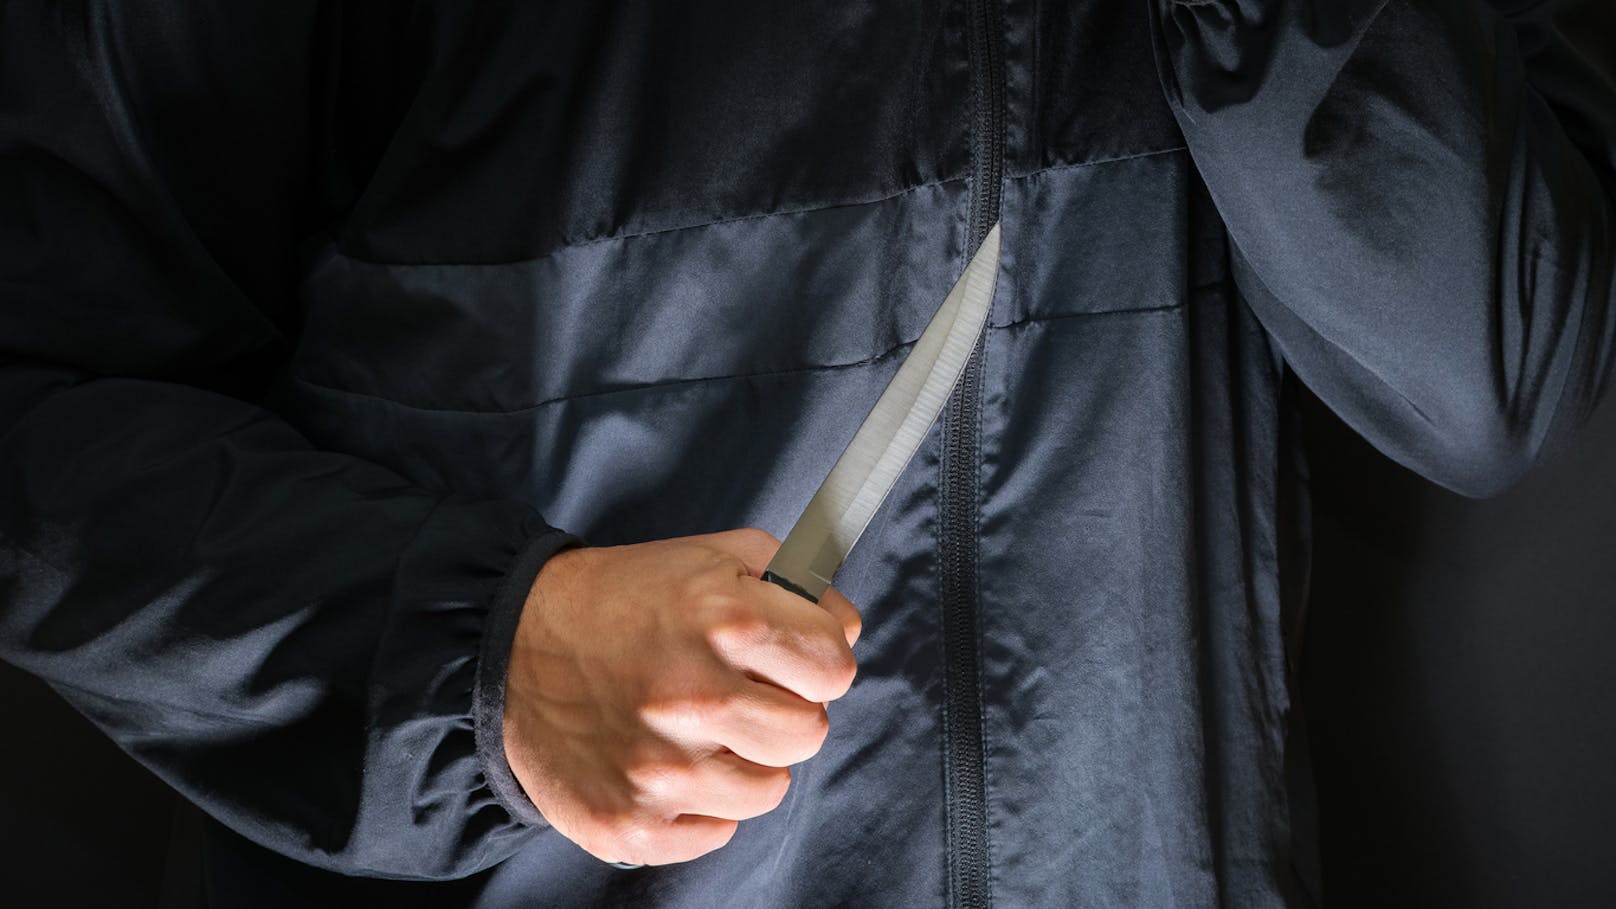 Mit einem Messer bedrohte der Täter laut Polizei einen Angestellten.